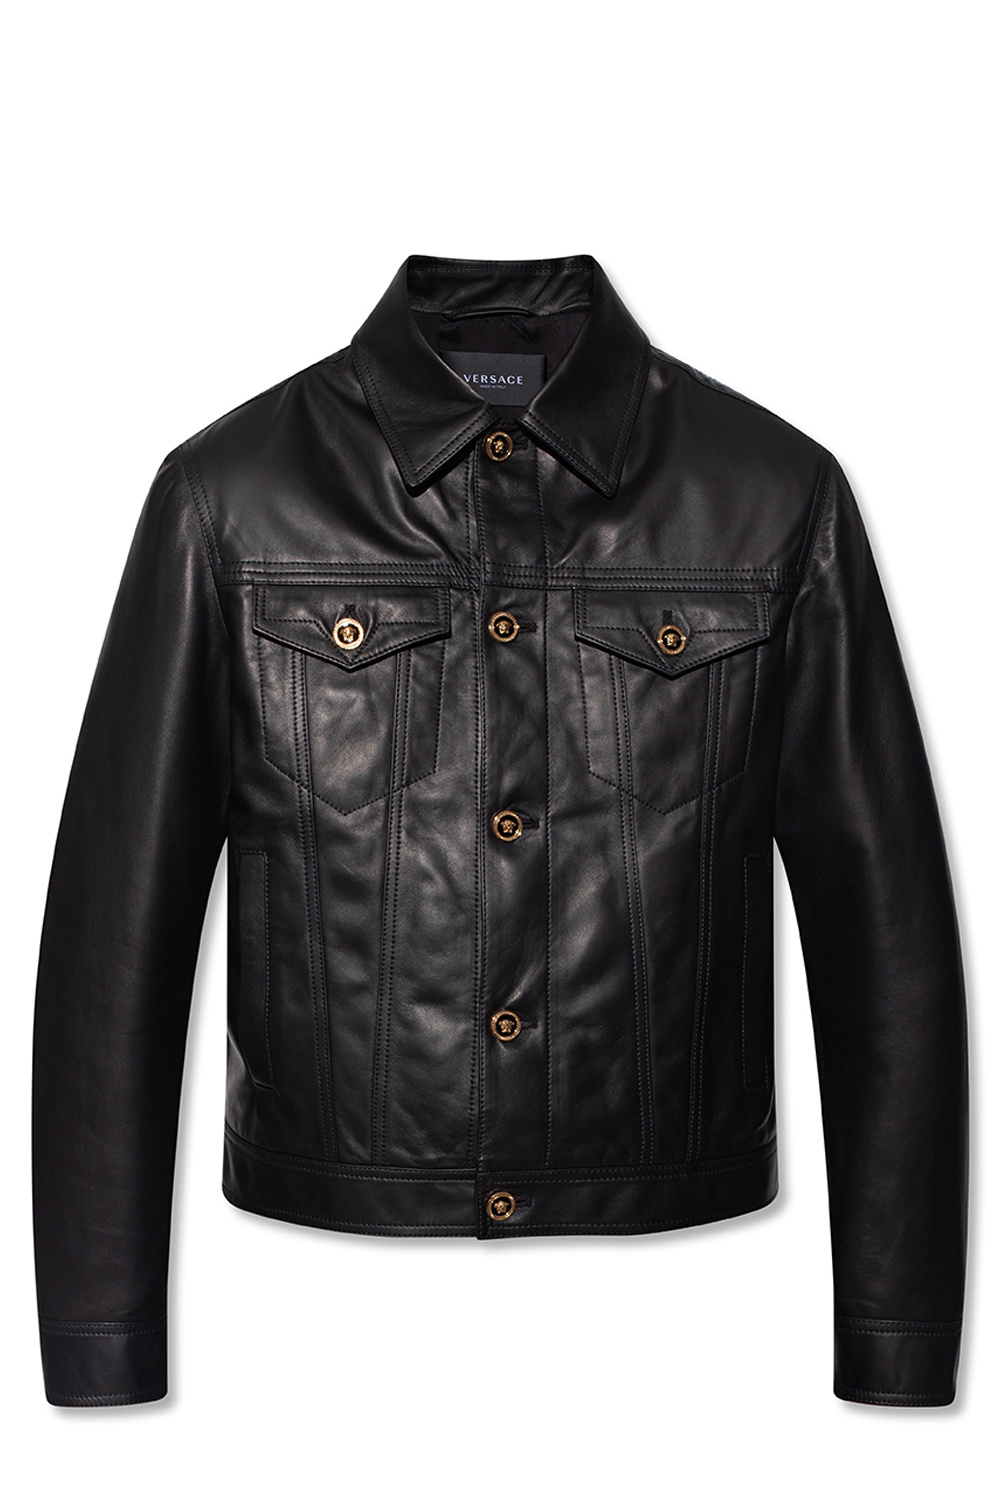 Kreek Land van staatsburgerschap variabel Versace Leather jacket | Men's Clothing | SS stones bear T-shirt | IetpShops